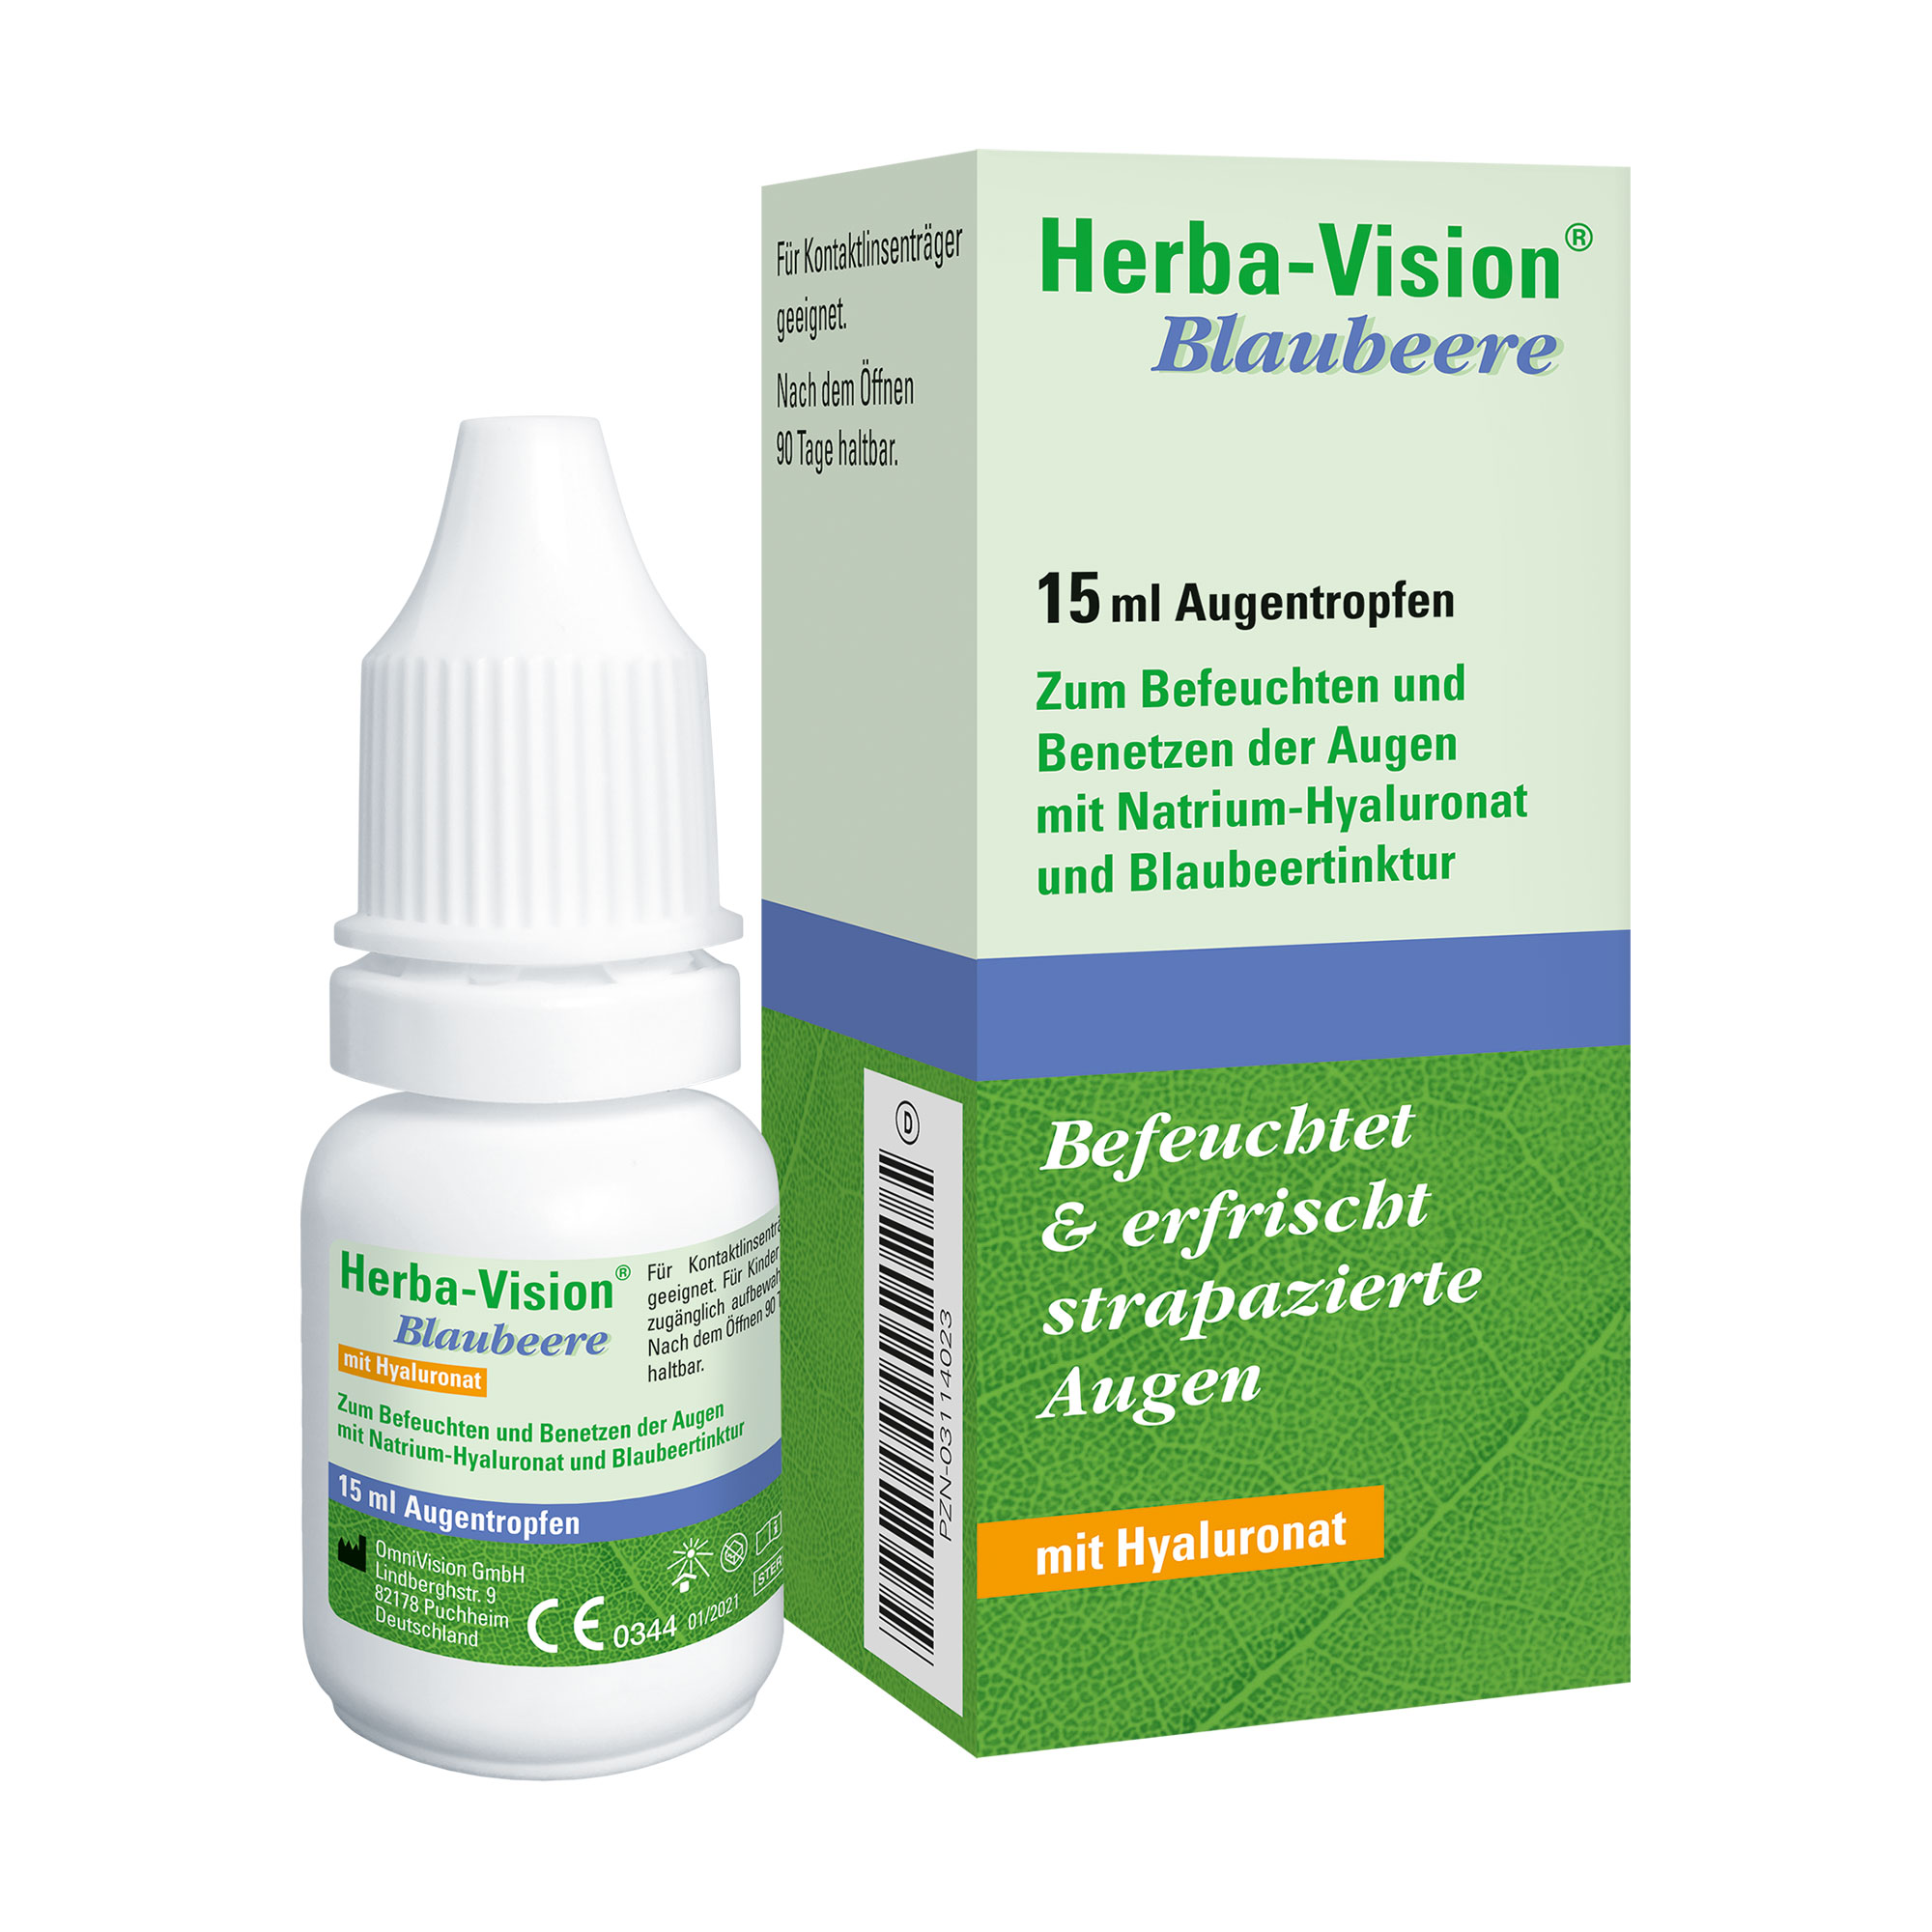 Lösung zum Befeuchten und Benetzen der Augen mit Natrium-Hyaluronat und Blaubeertinktur.